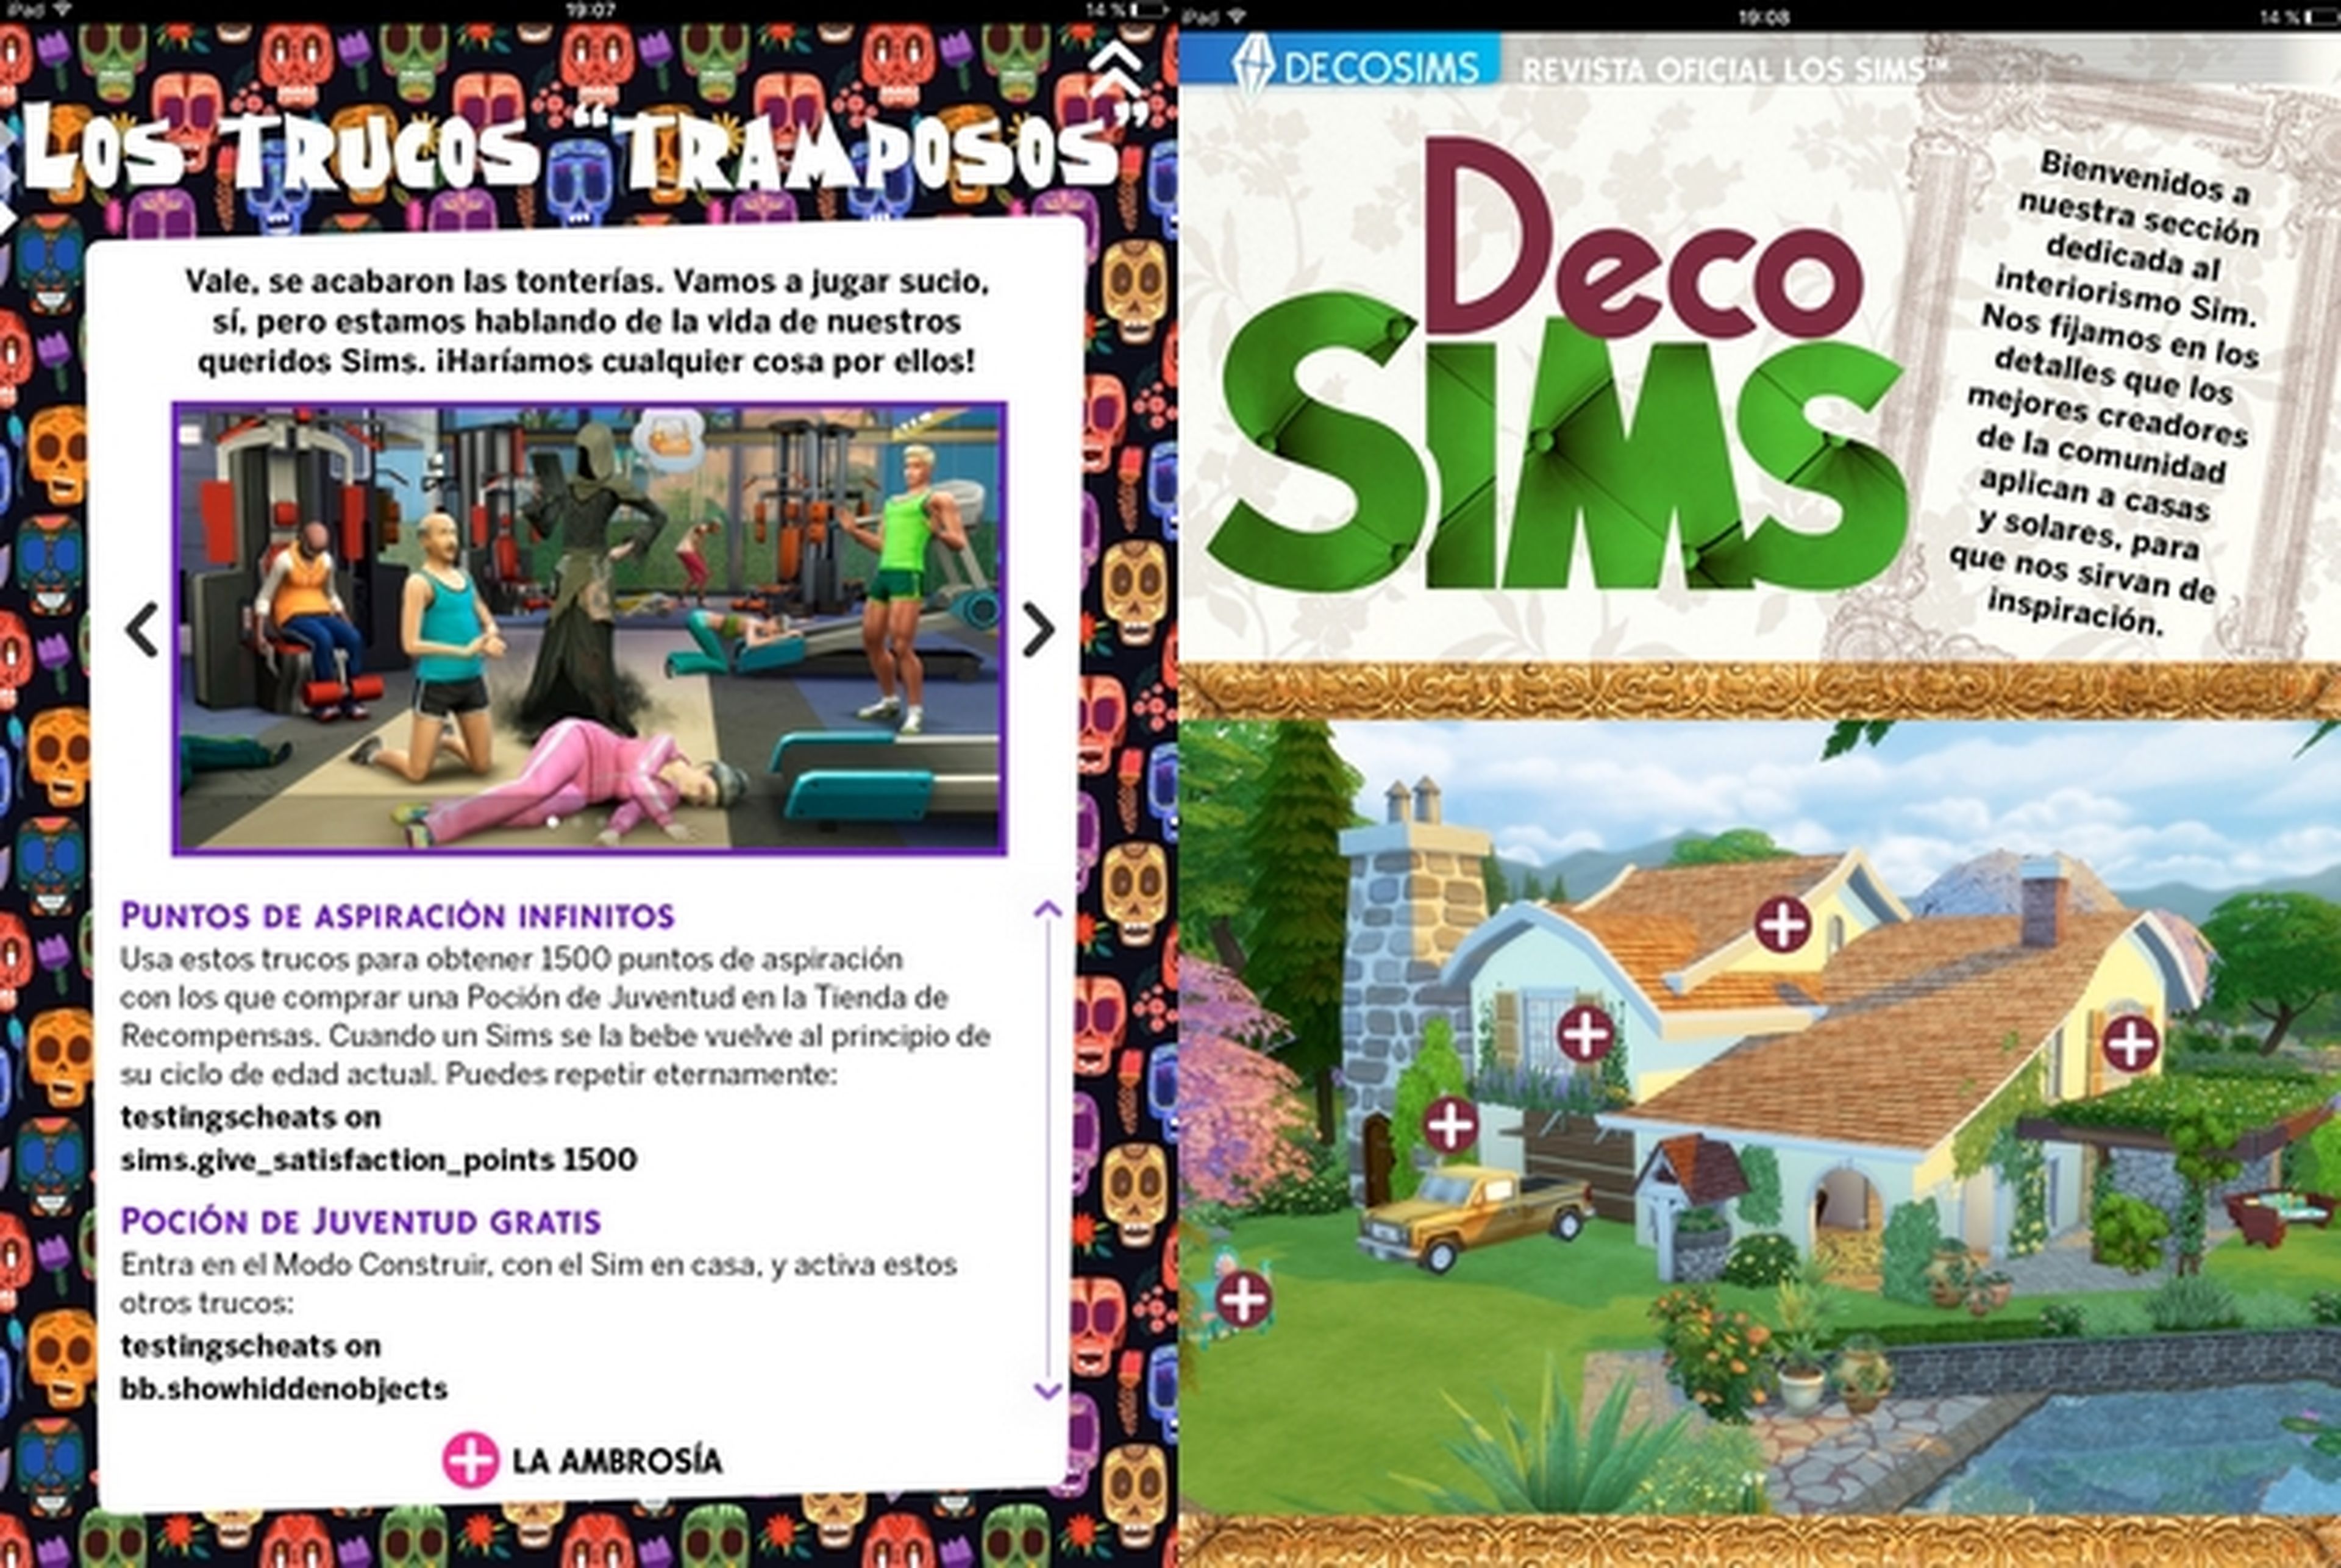 Revista Oficial de los Sims 24 para iOS y Android, descárgala gratis